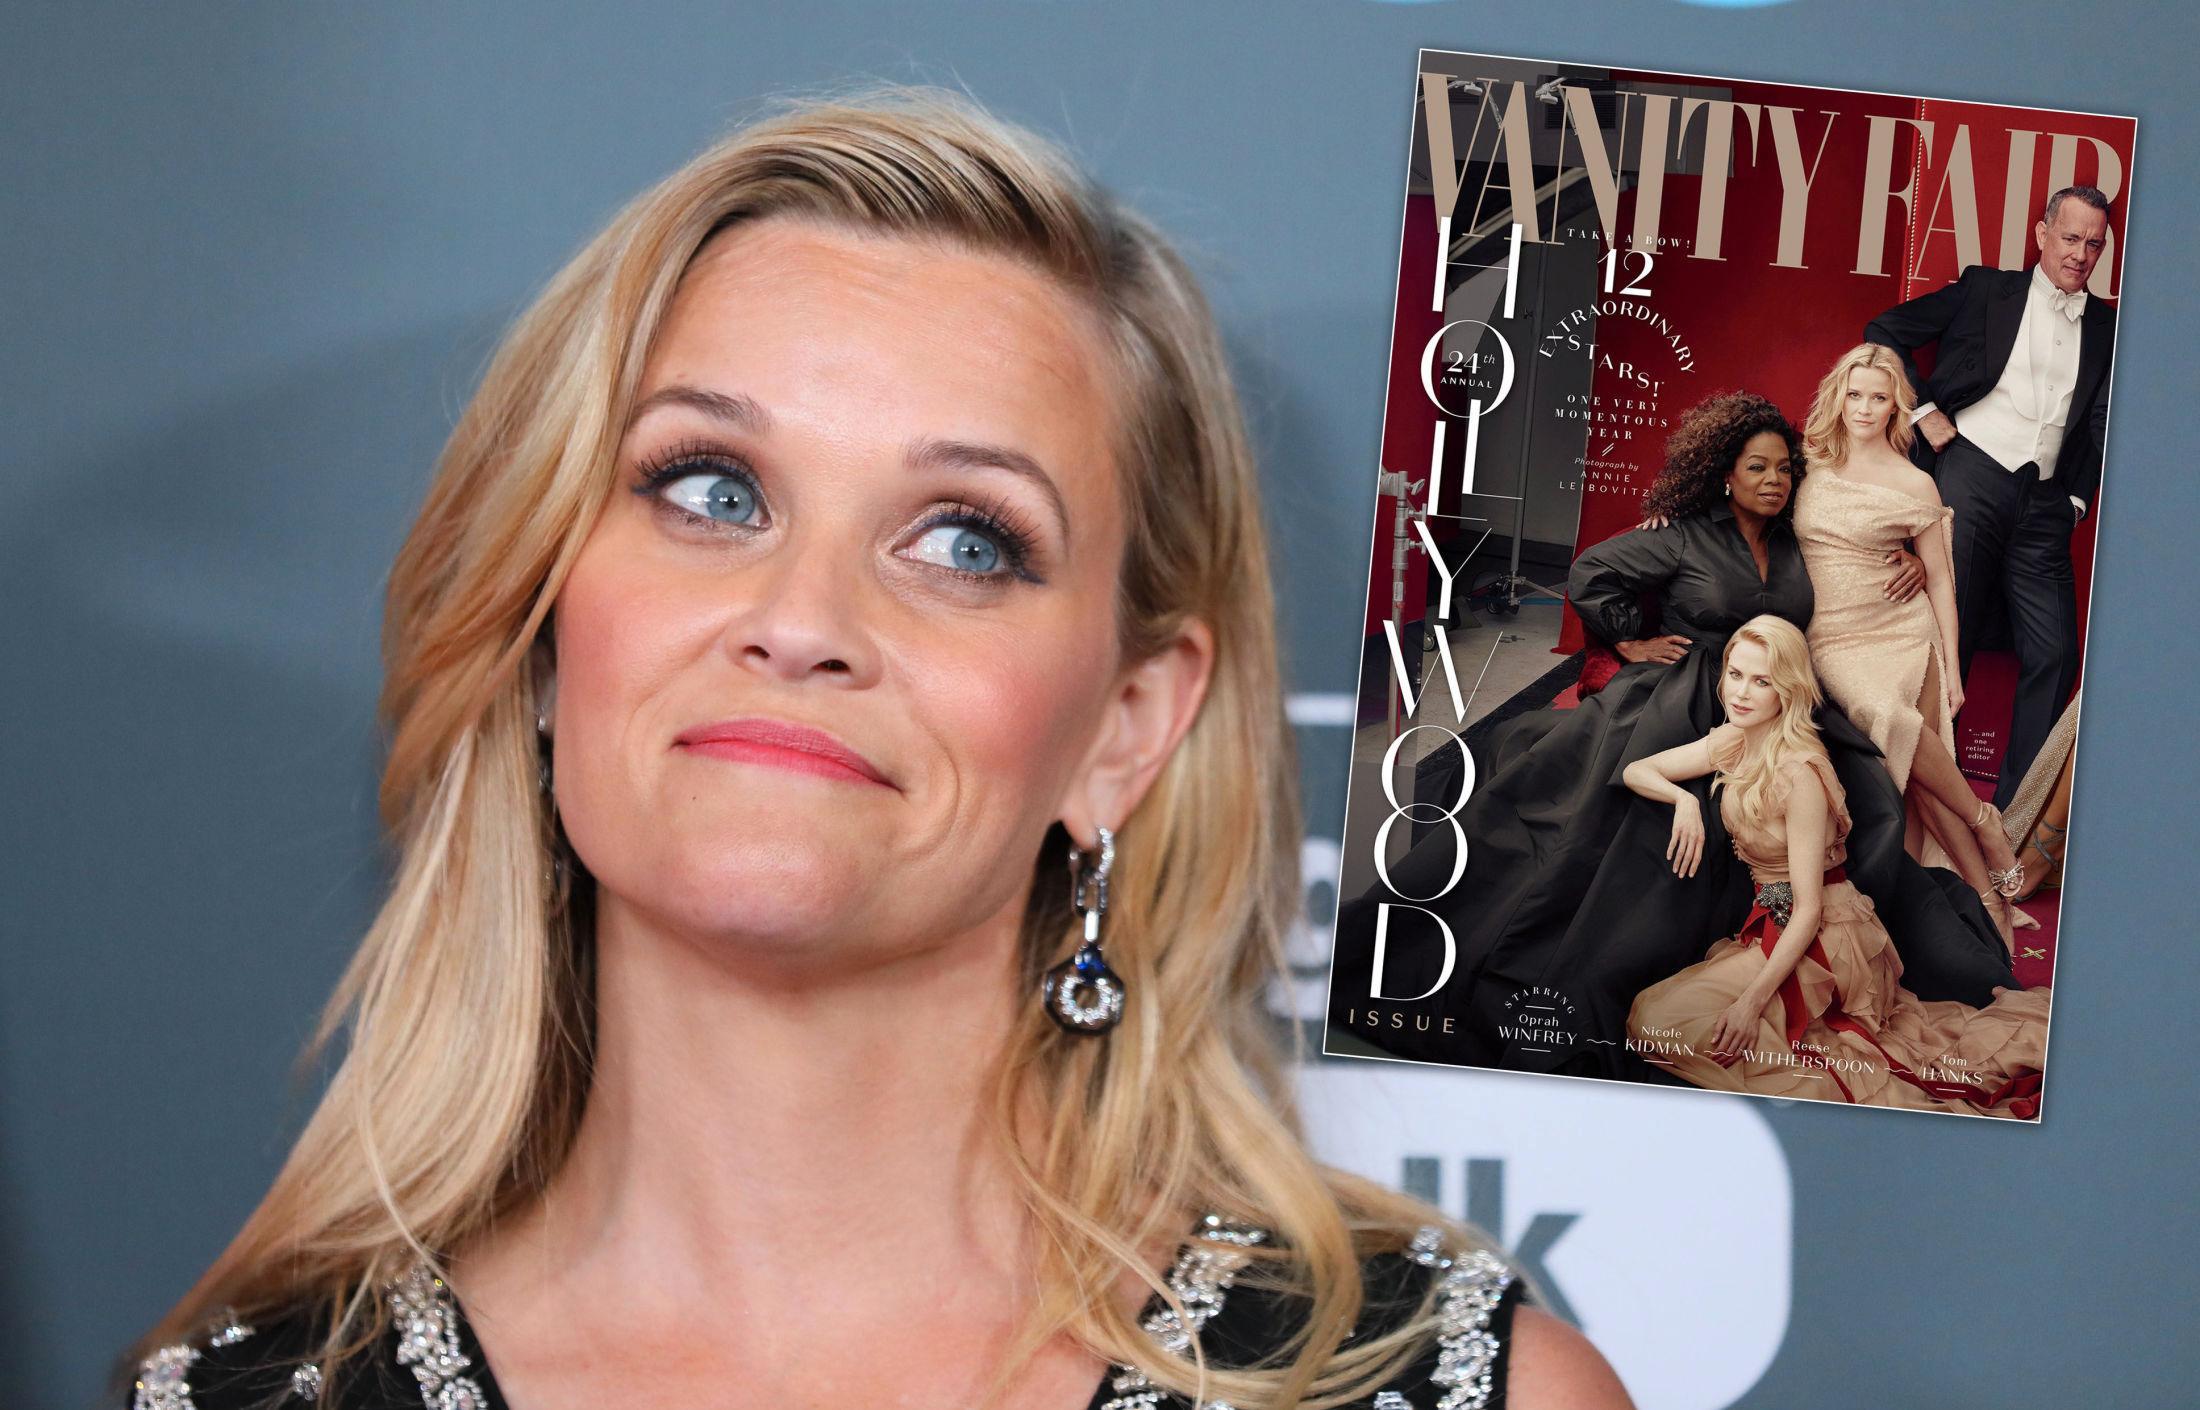 OPTISK ILLUSJON: Reese Witherspoon måtte le da fans reagerte på at hun fremstår som trebeint på coveret av Vanity Fair. Foto: NTB Scanpix / Faksimile: Vanity Fair